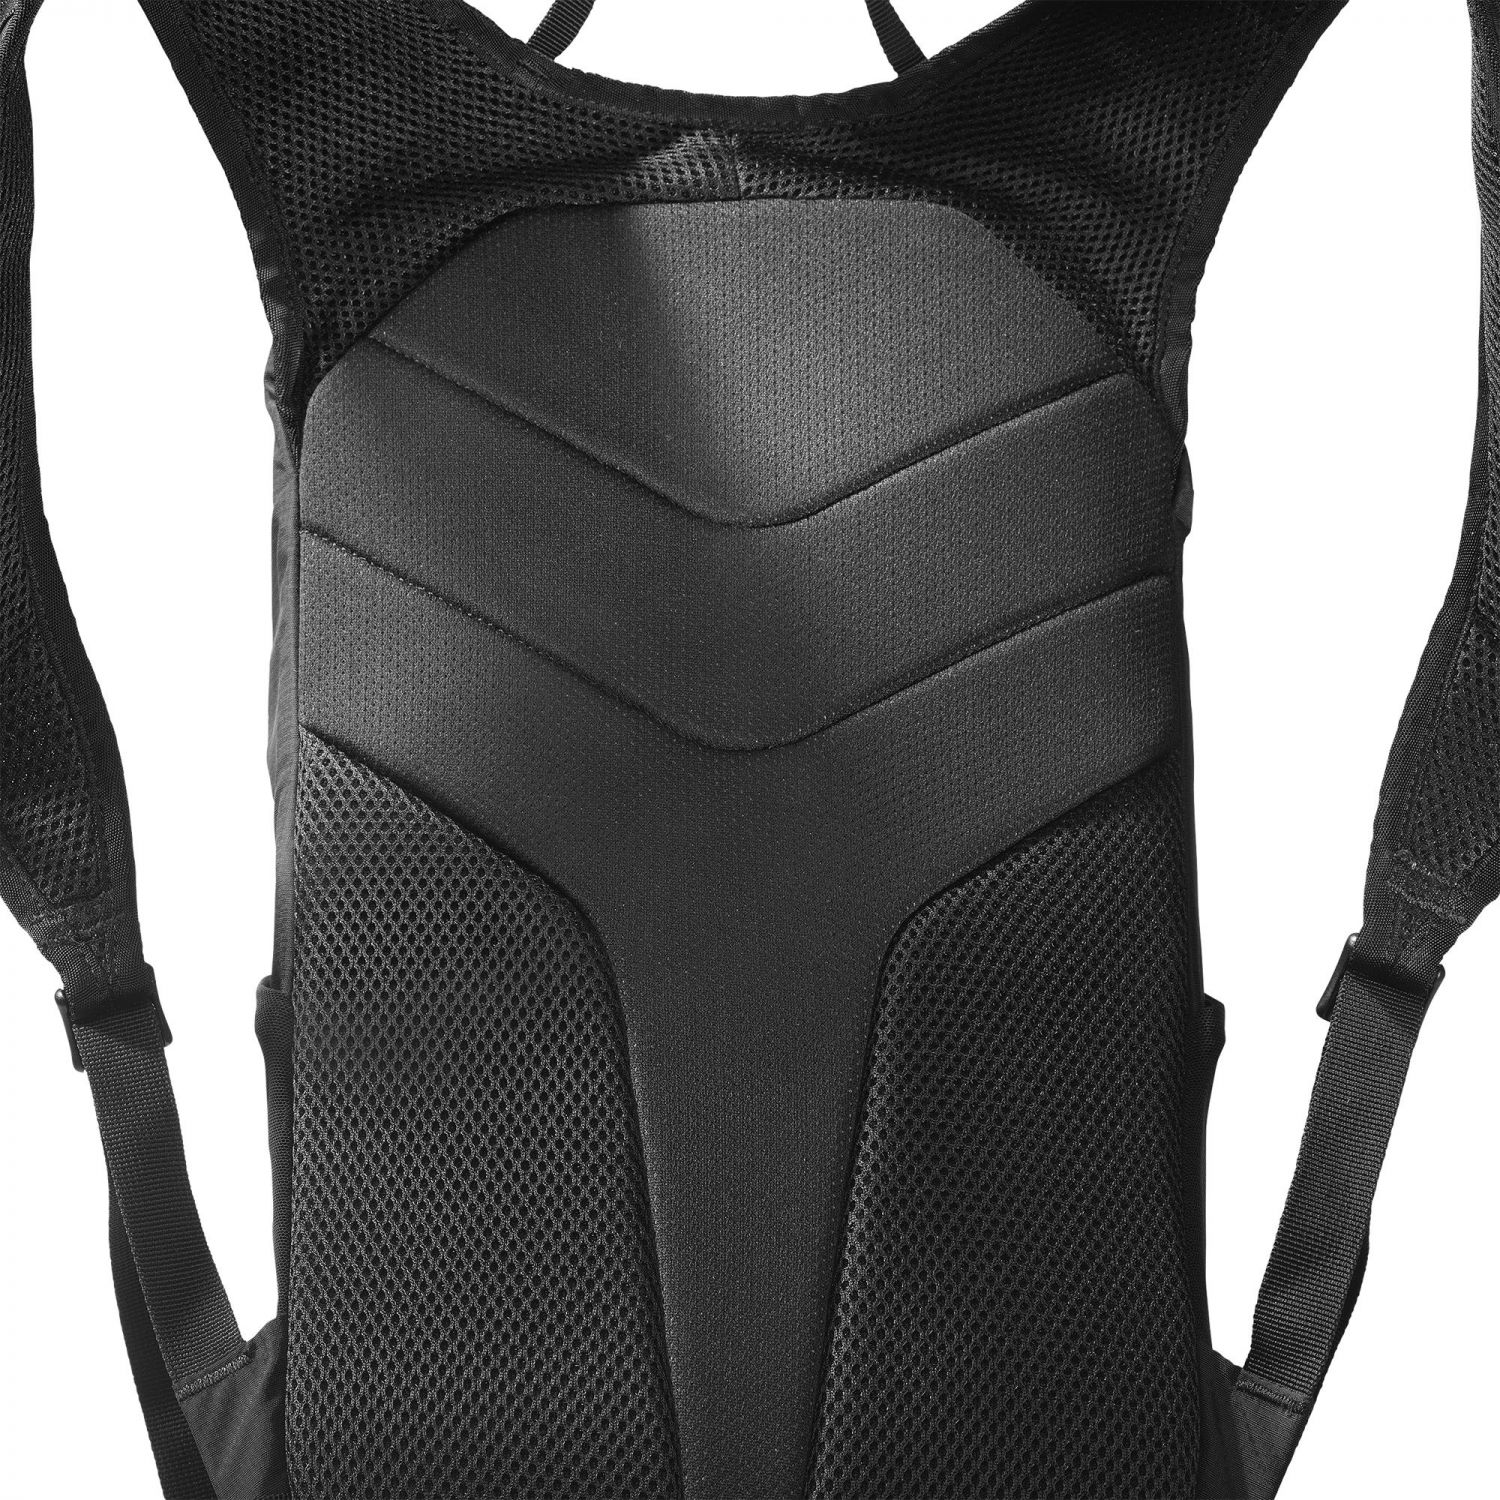 Salomon Trailblazer 10, backpack, black/allloy